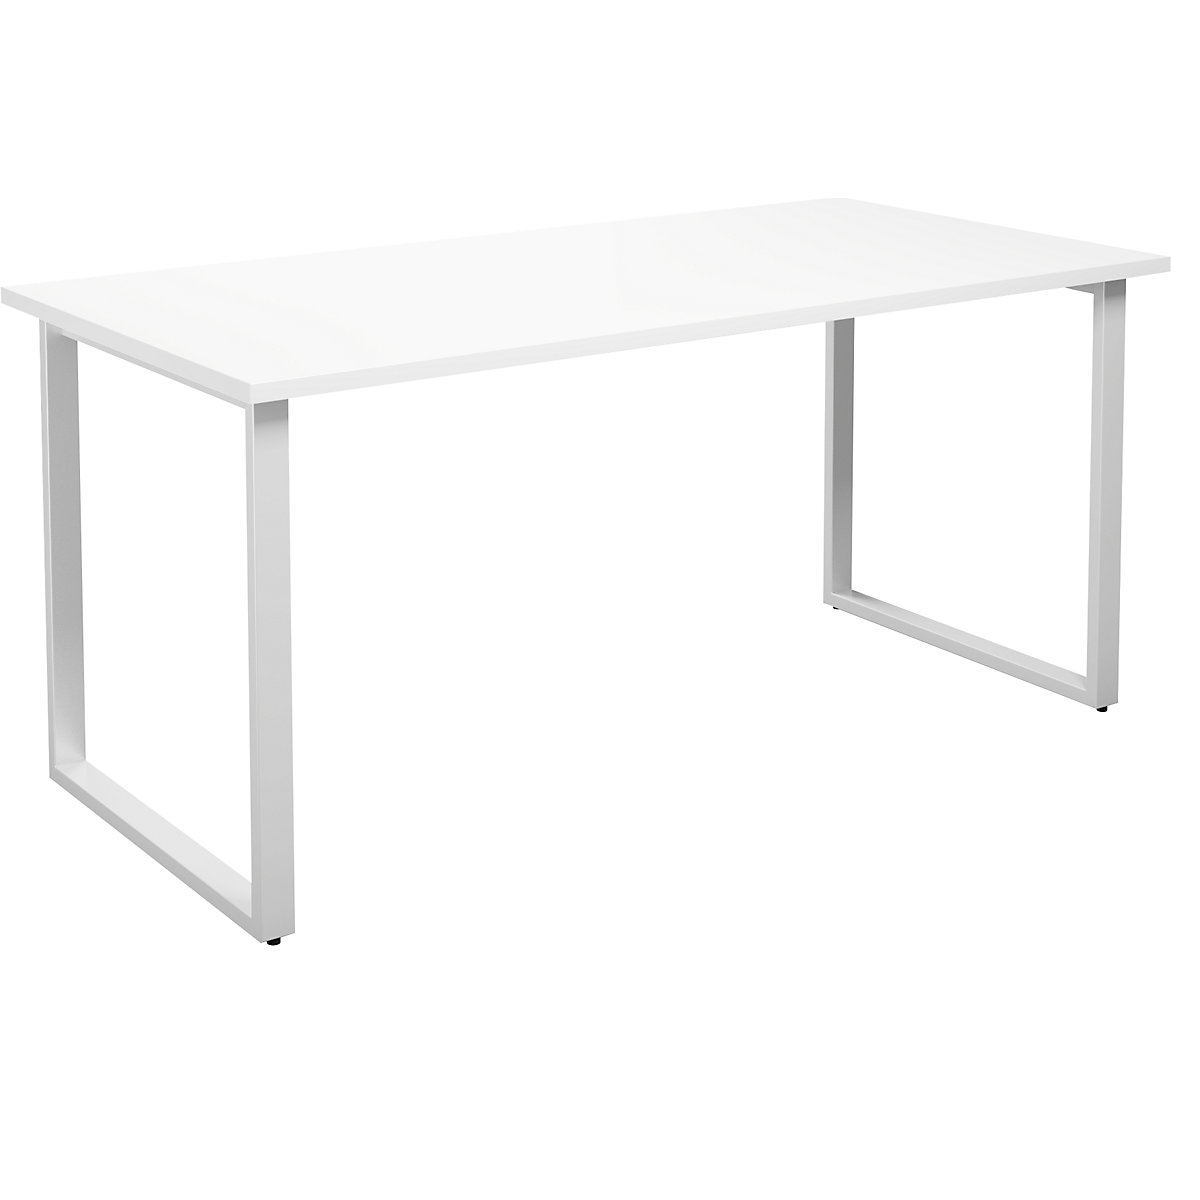 DUO-O multi-purpose desk, straight tabletop, WxD 1600 x 800 mm, white, white-13